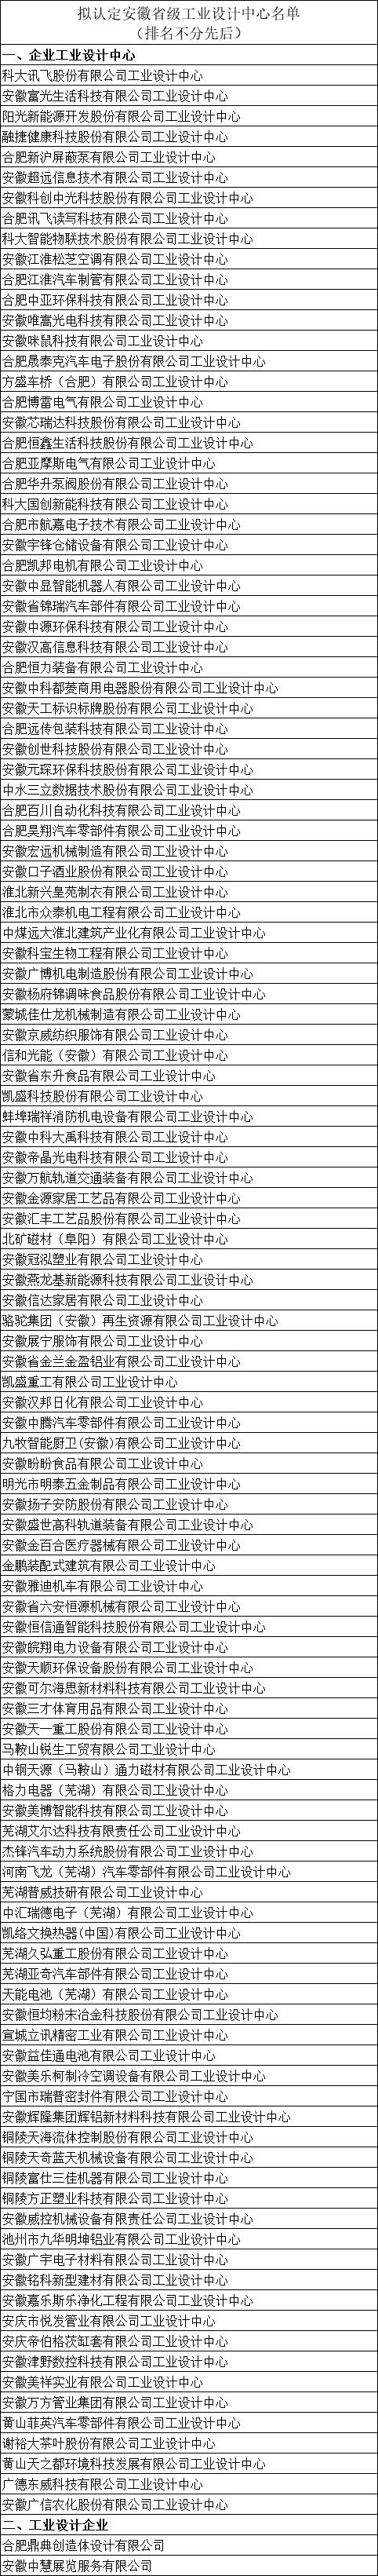 安徽省工业设计中心名单